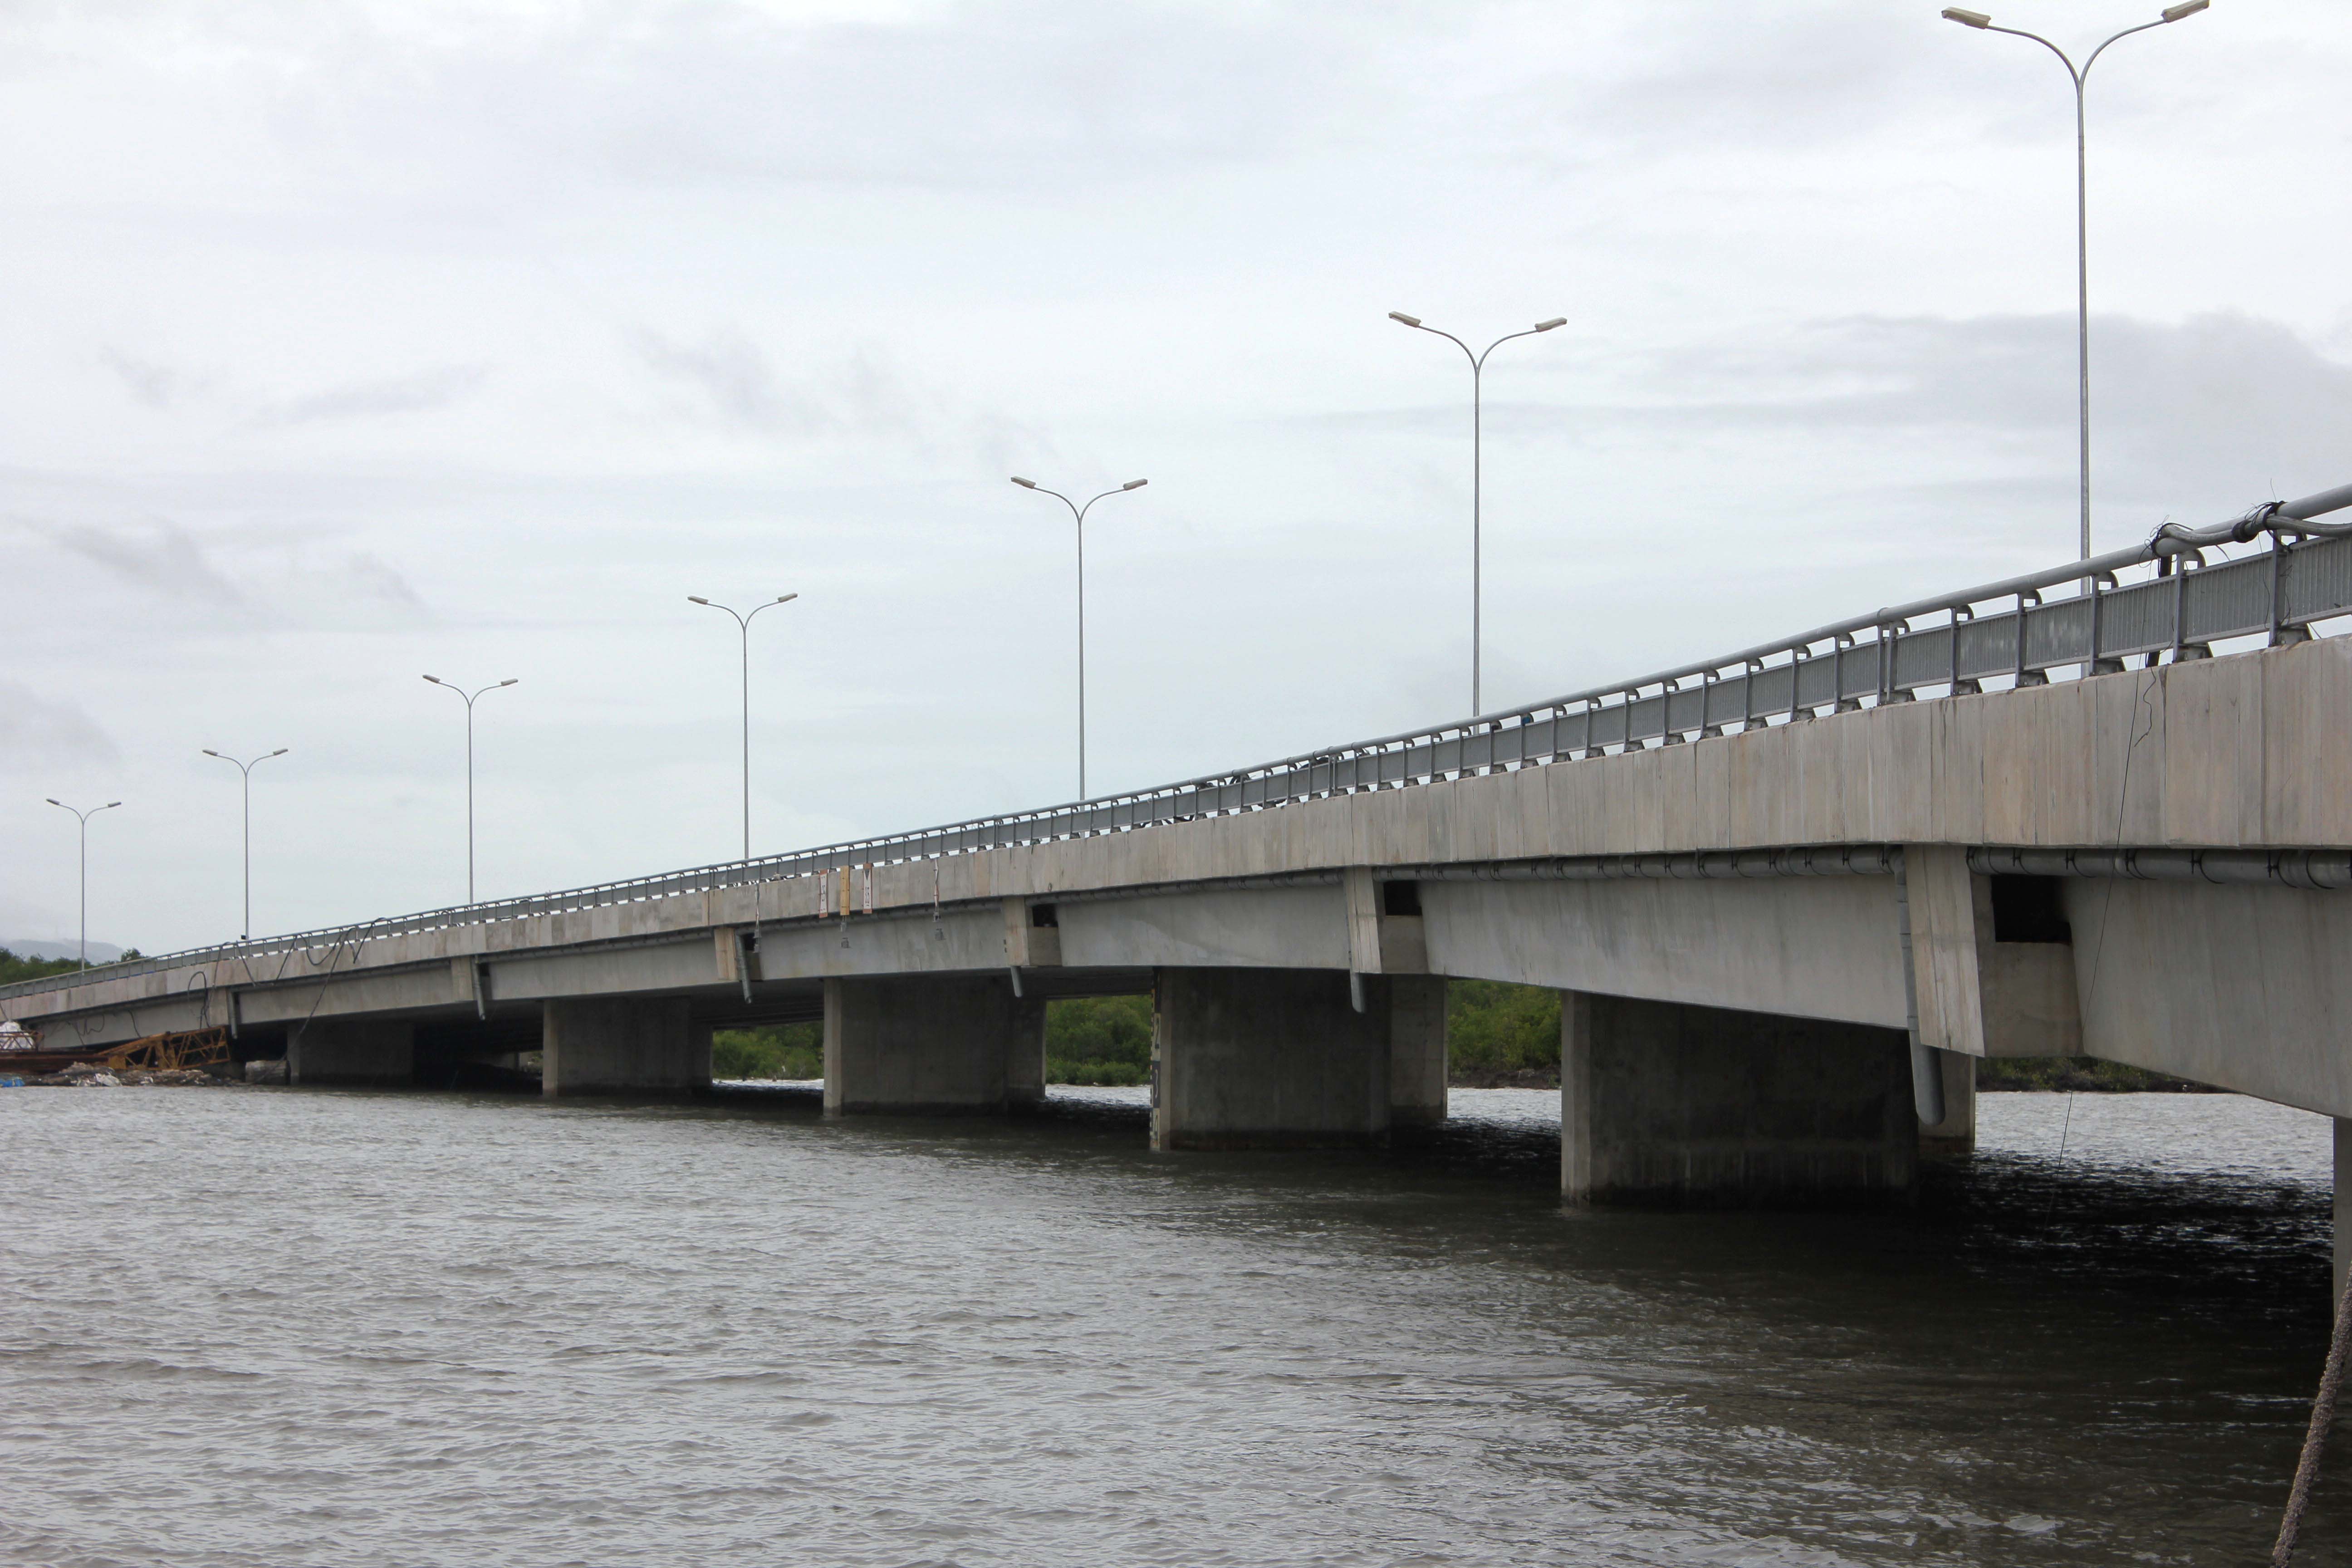 Cầu Vàm Gửi trên tuyến Đường liên cảng Cái Mép - Thị Vải được xây dựng xong. Ảnh: Ngọc Tuấn.